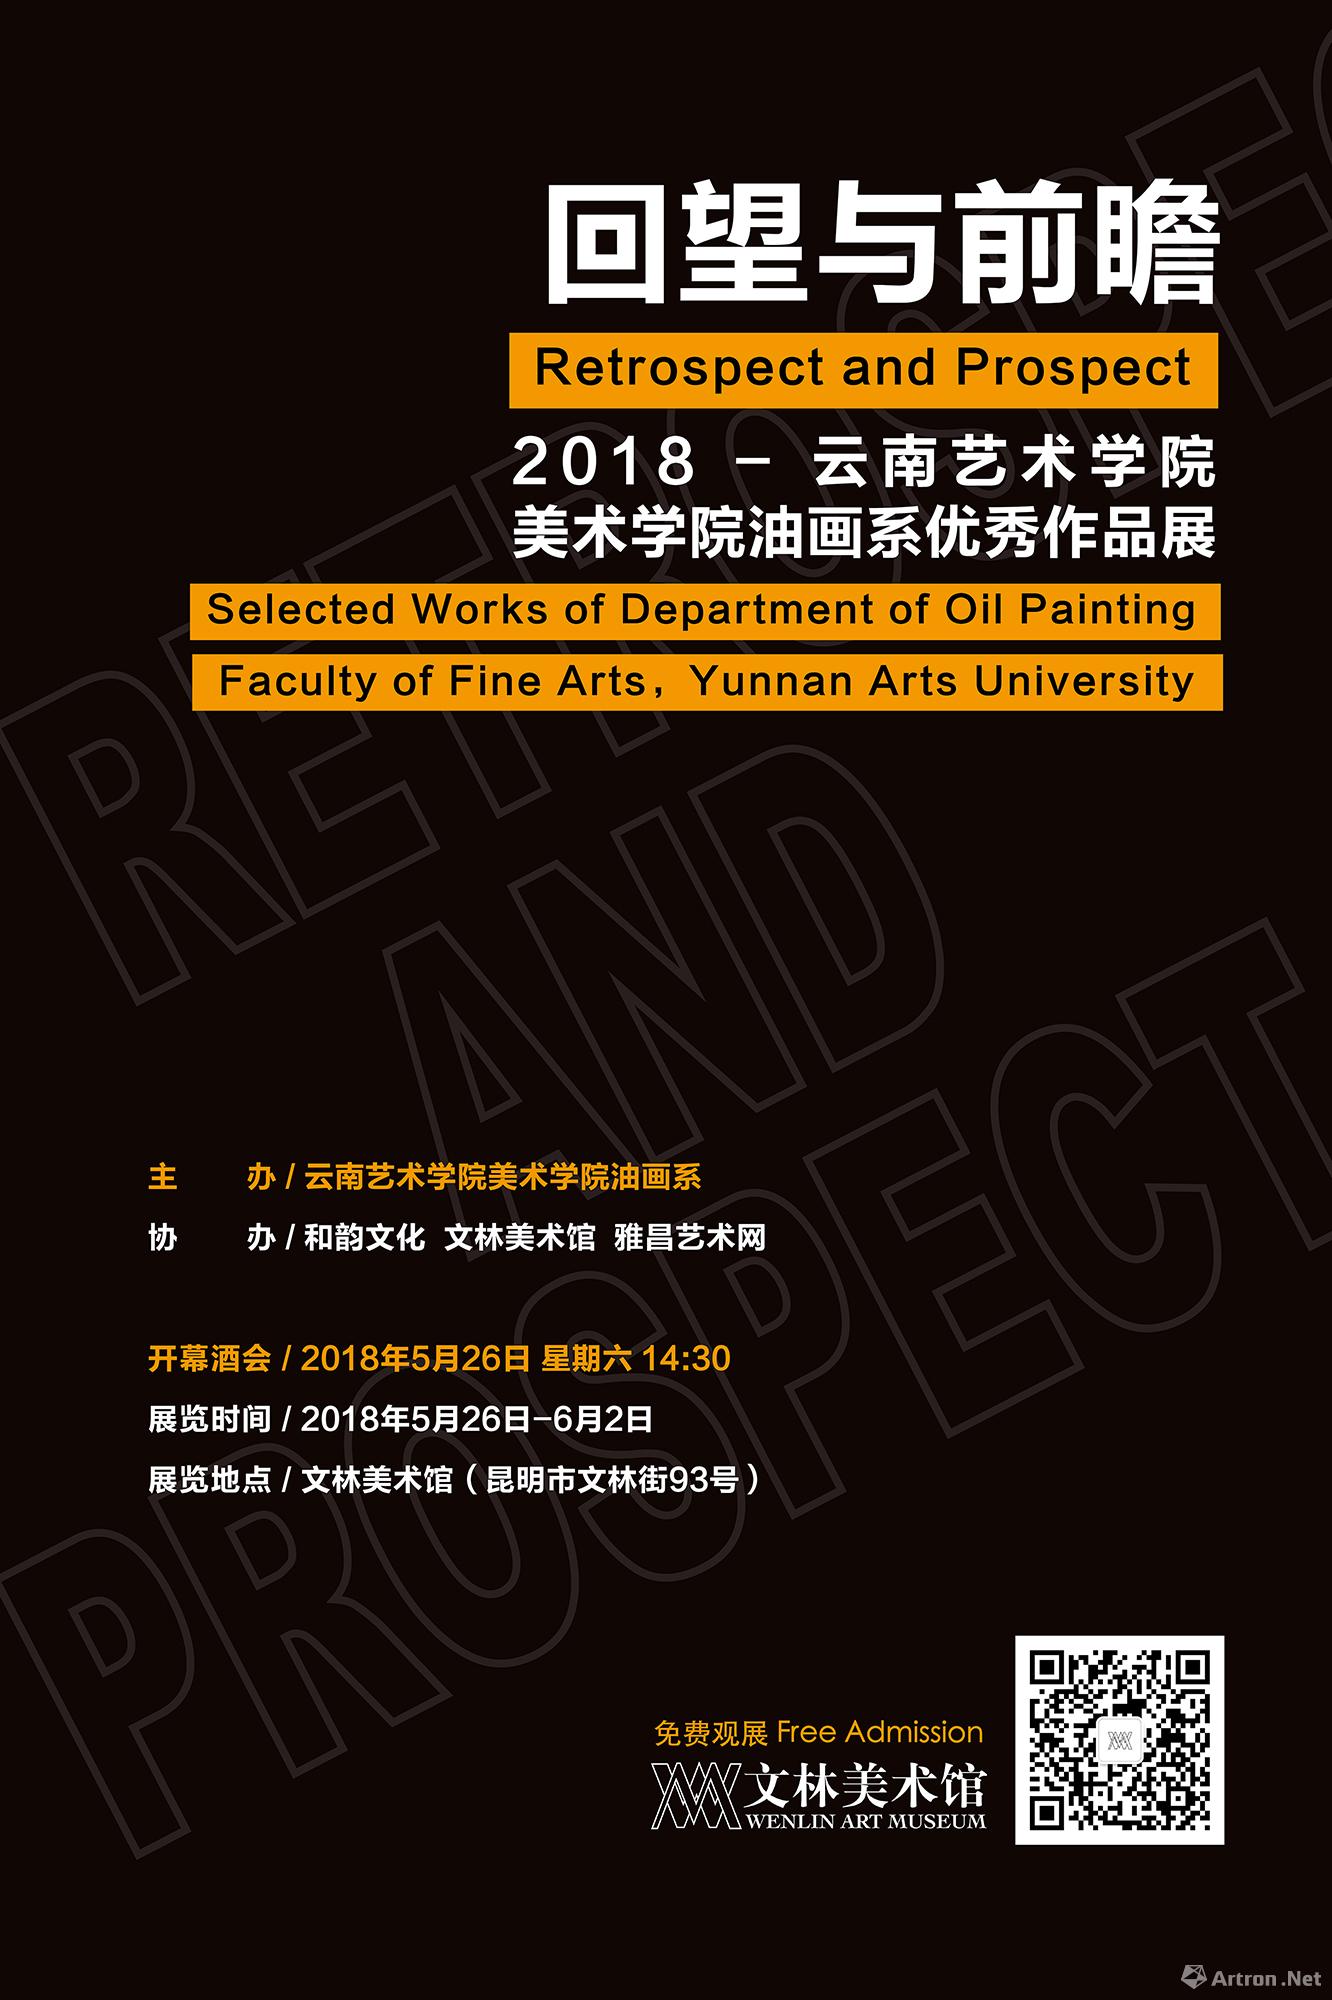 “回望与前瞻”2018云南艺术学院美术学院油画系优秀作品展